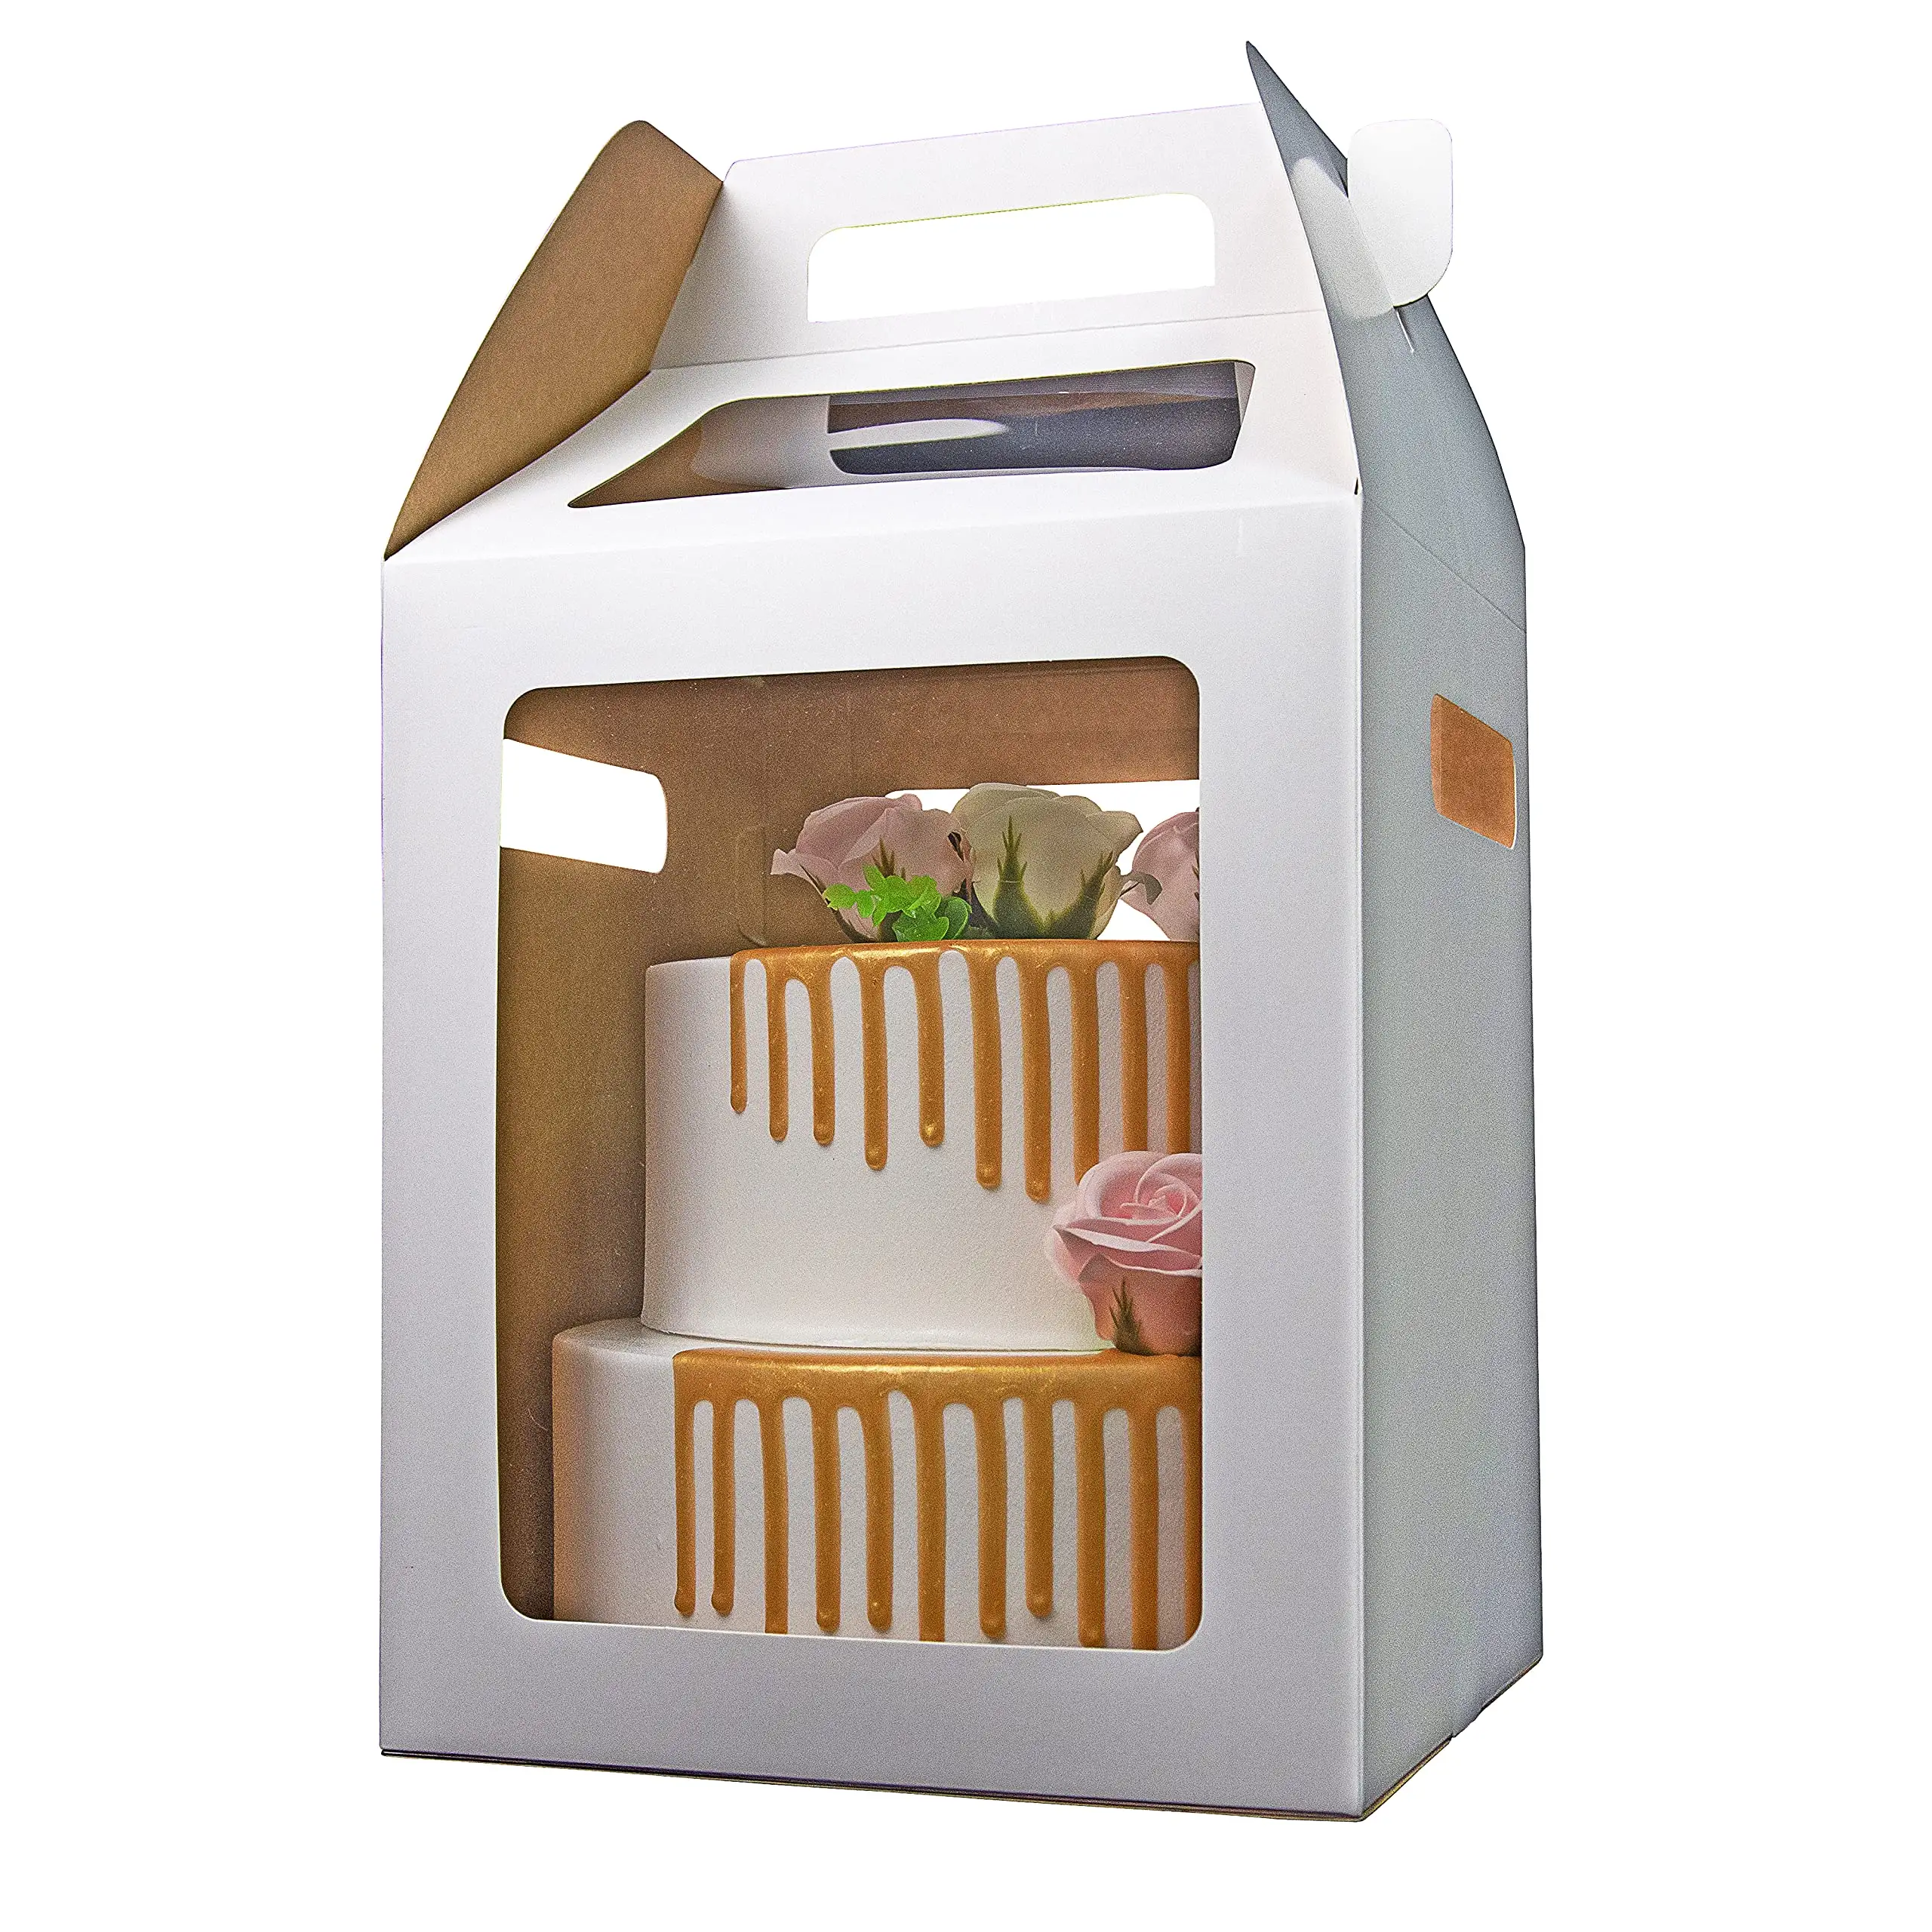 Tragbare 10x10x12inch hohe Kuchen behälter Papier kuchen boxen Kuchen träger für Party hochzeit mit 4 Fenstern